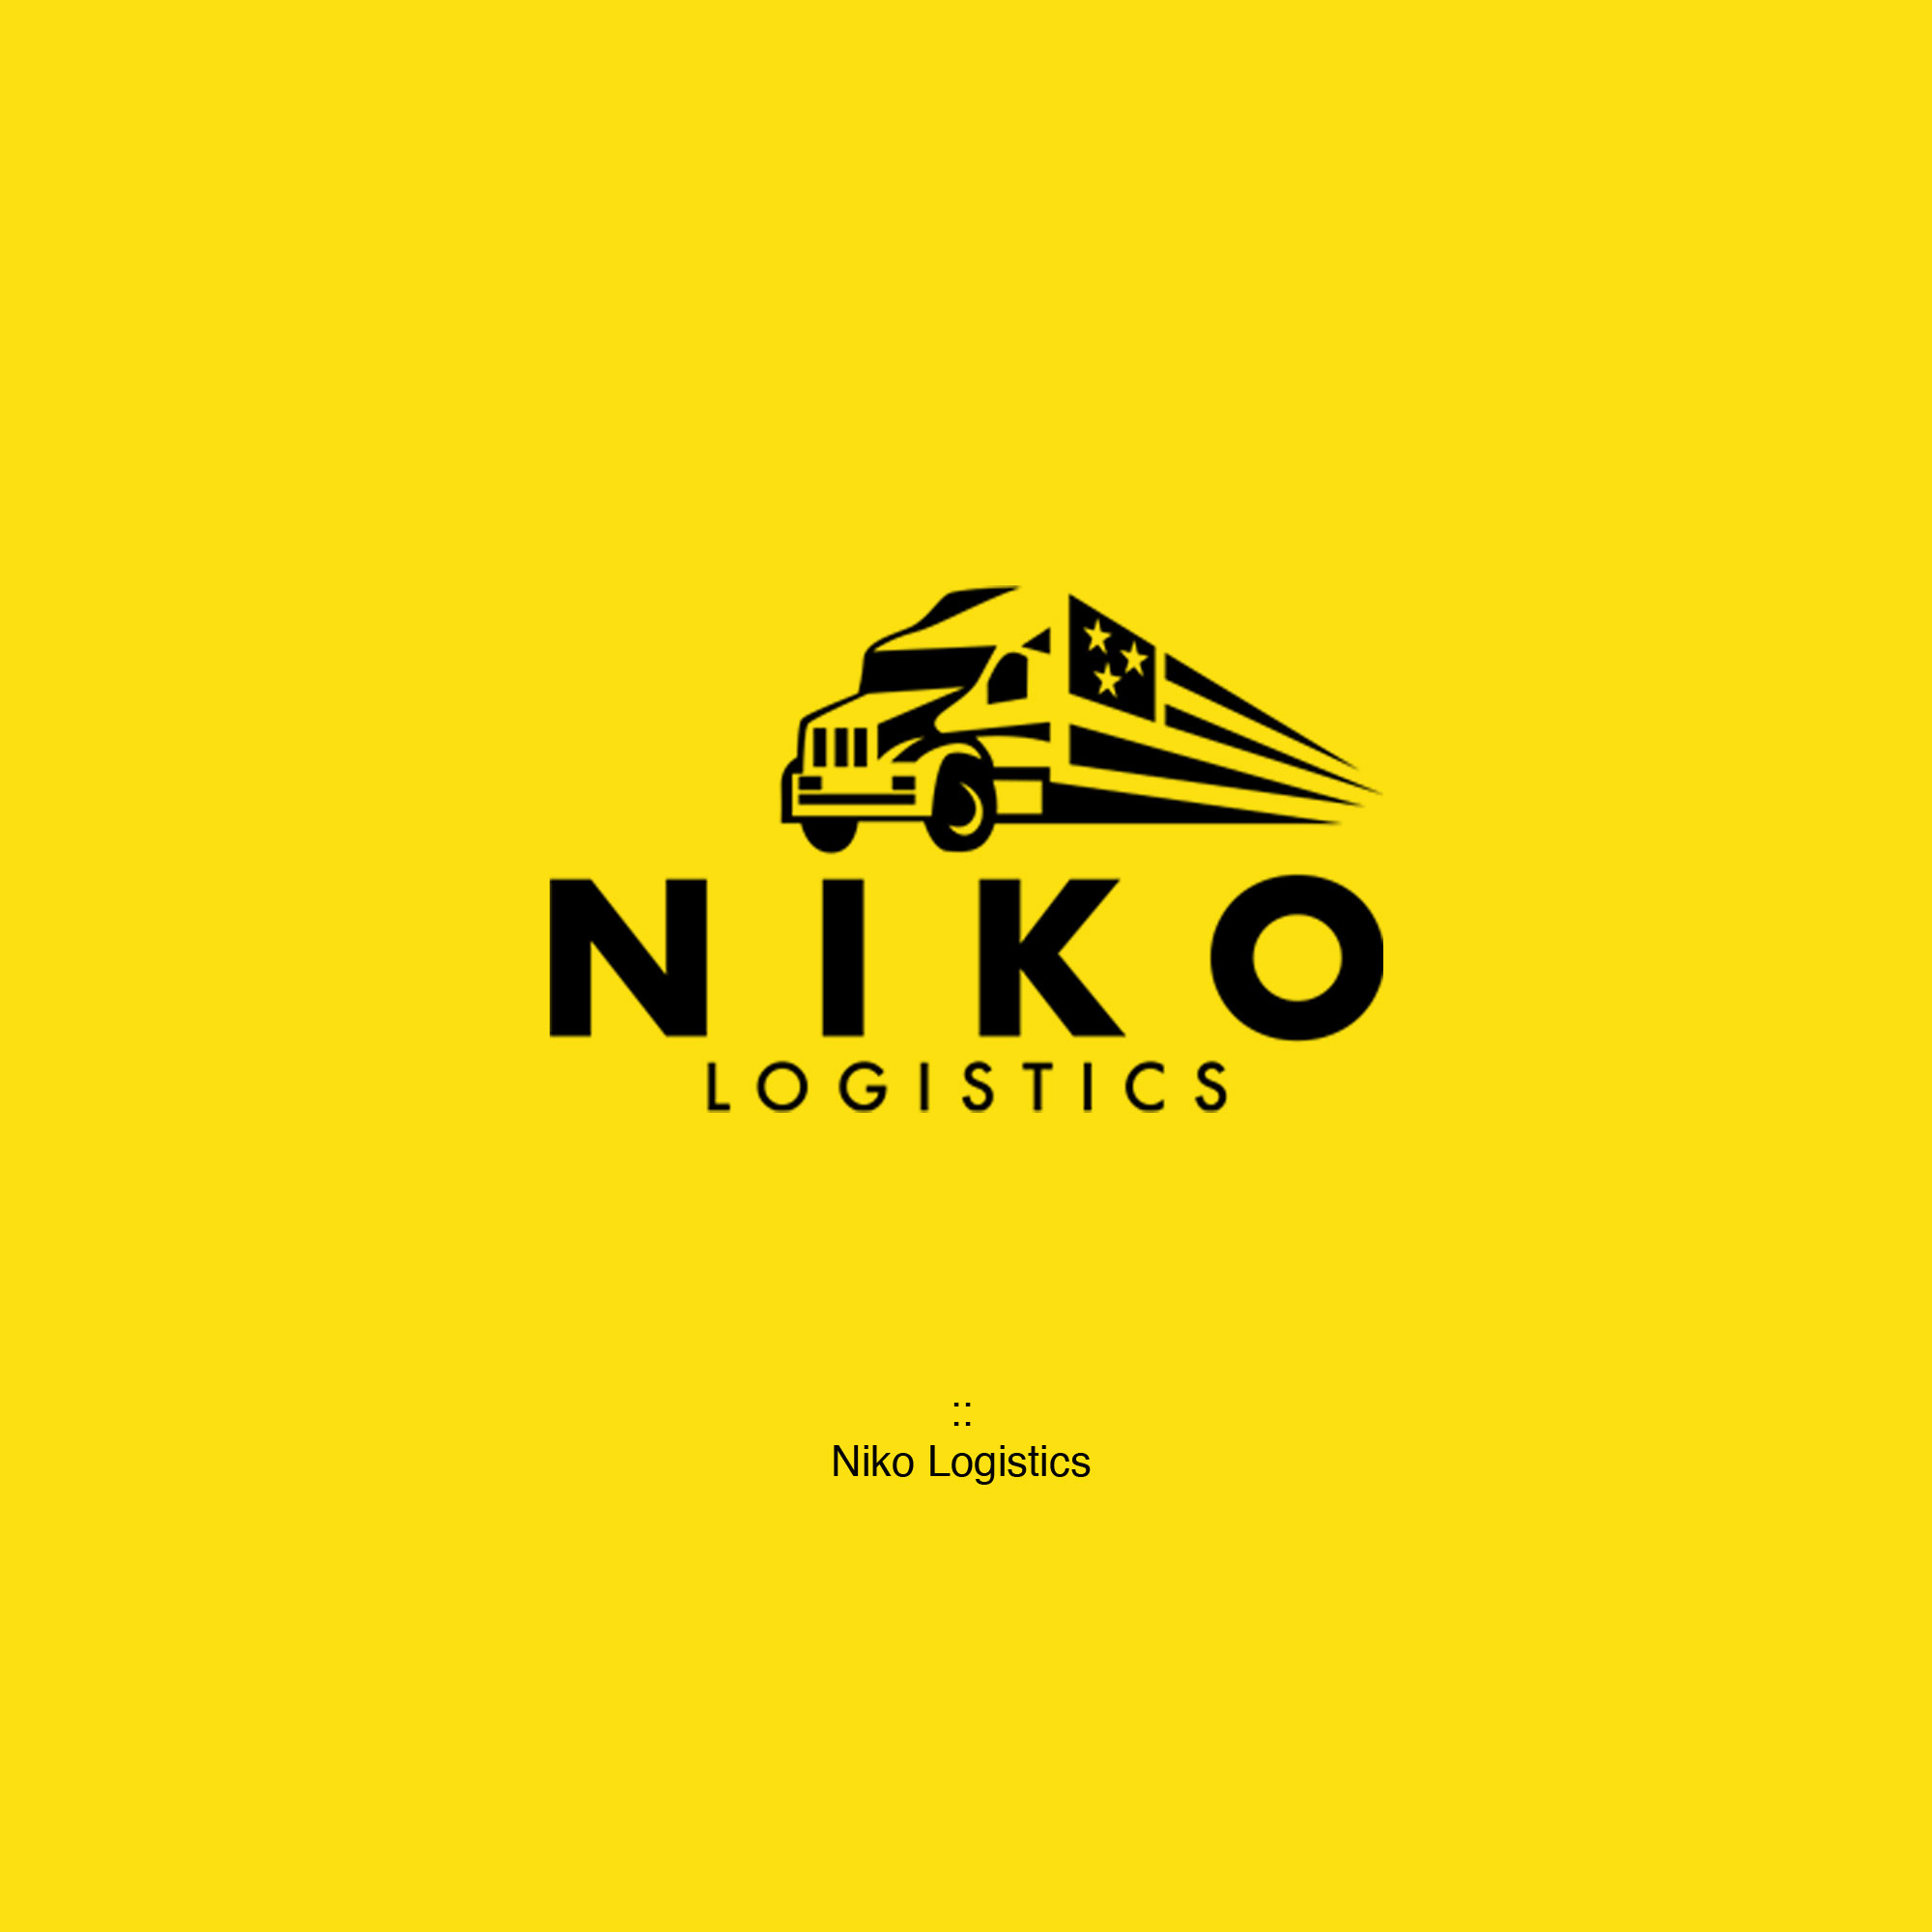 Niko Logistics